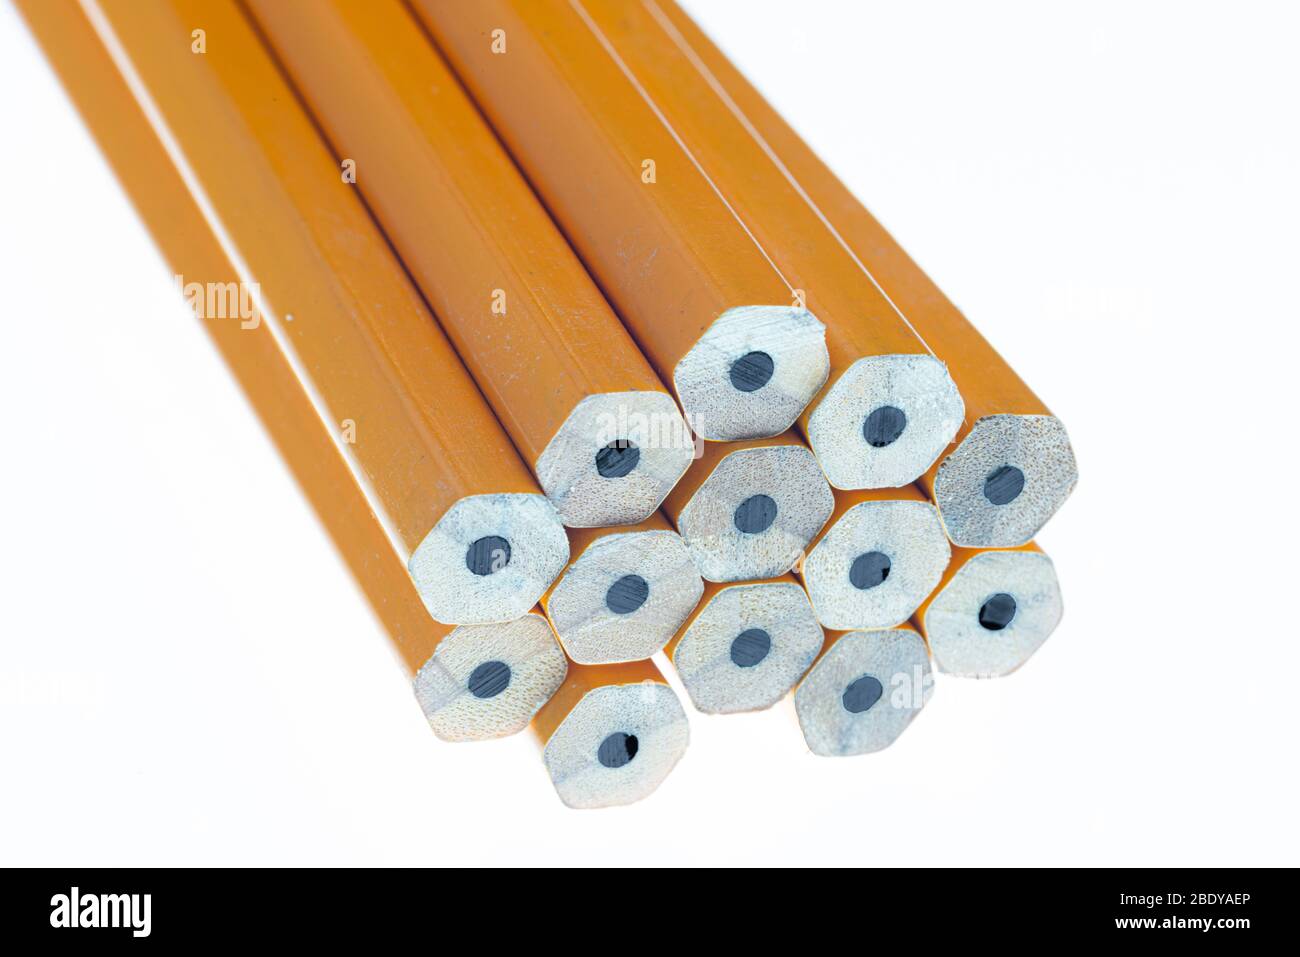 Horizontale Nahaufnahme des Bleiendes einer Gruppe von Bleistiften. Die Bleistifte sind nicht geschärft. Zeigt auf die Kamera. Weißer Hintergrund. Stockfoto